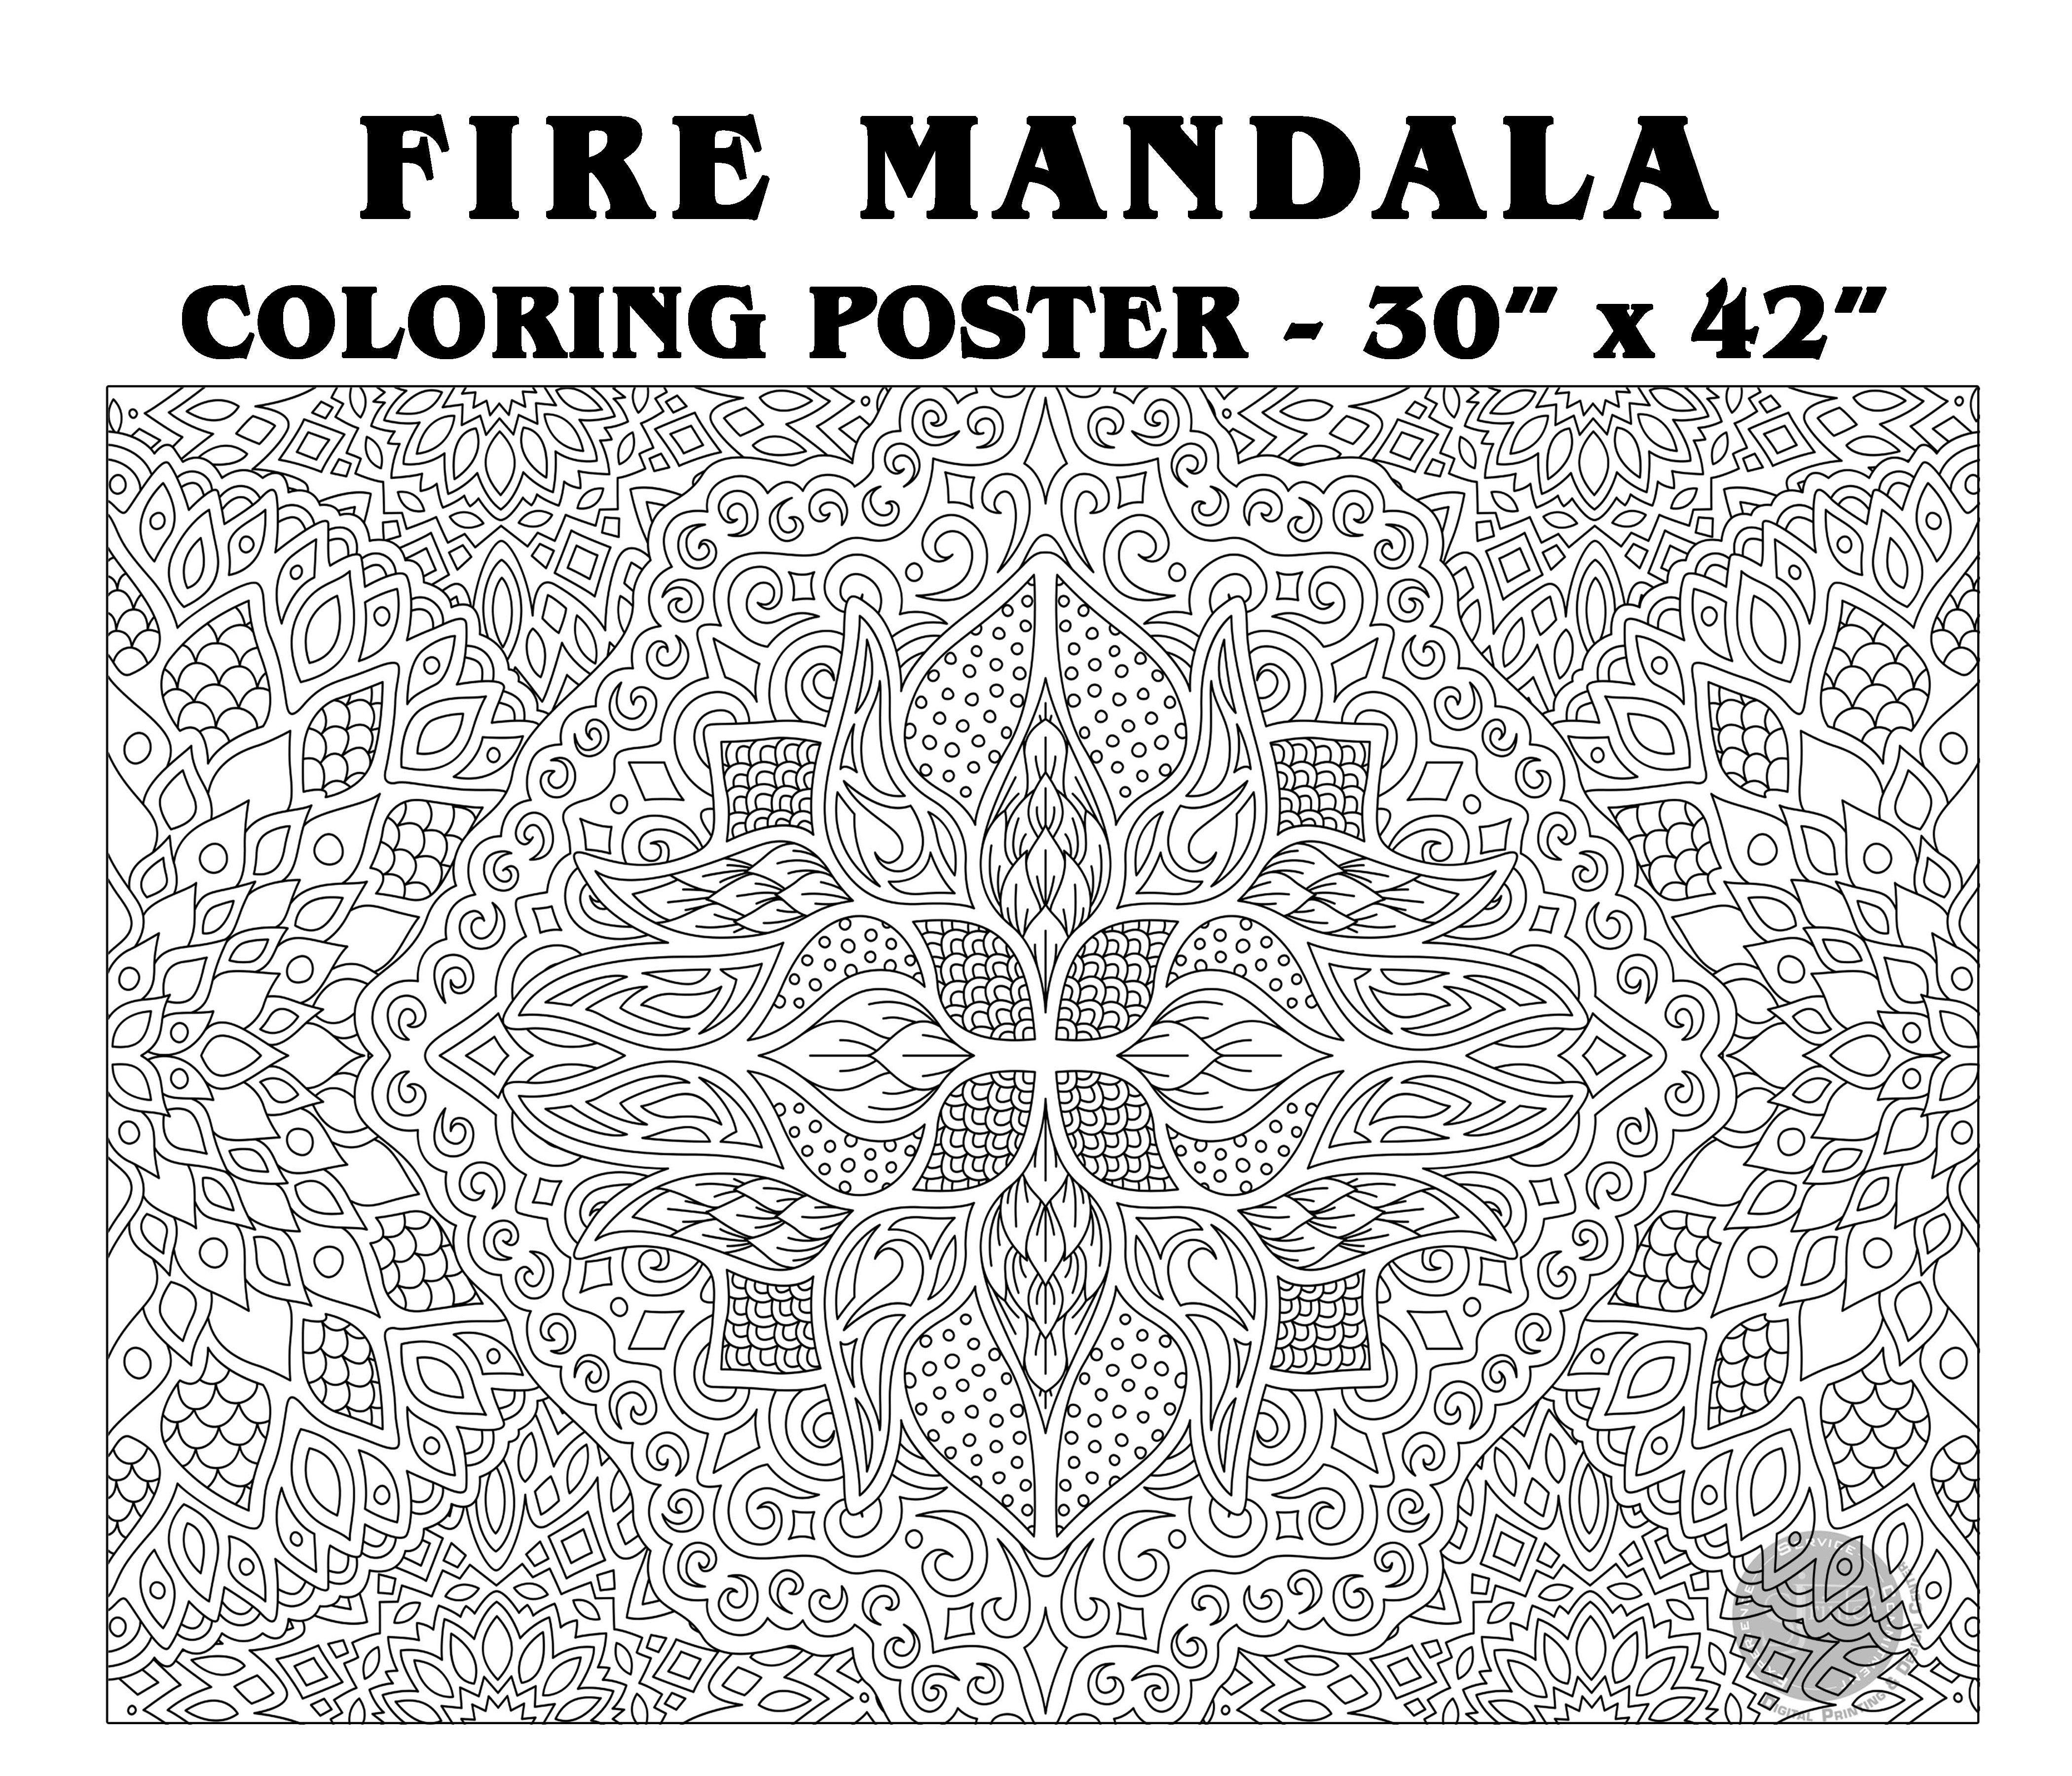 Fire Mandala - 30" x 42" - SJPrinter 